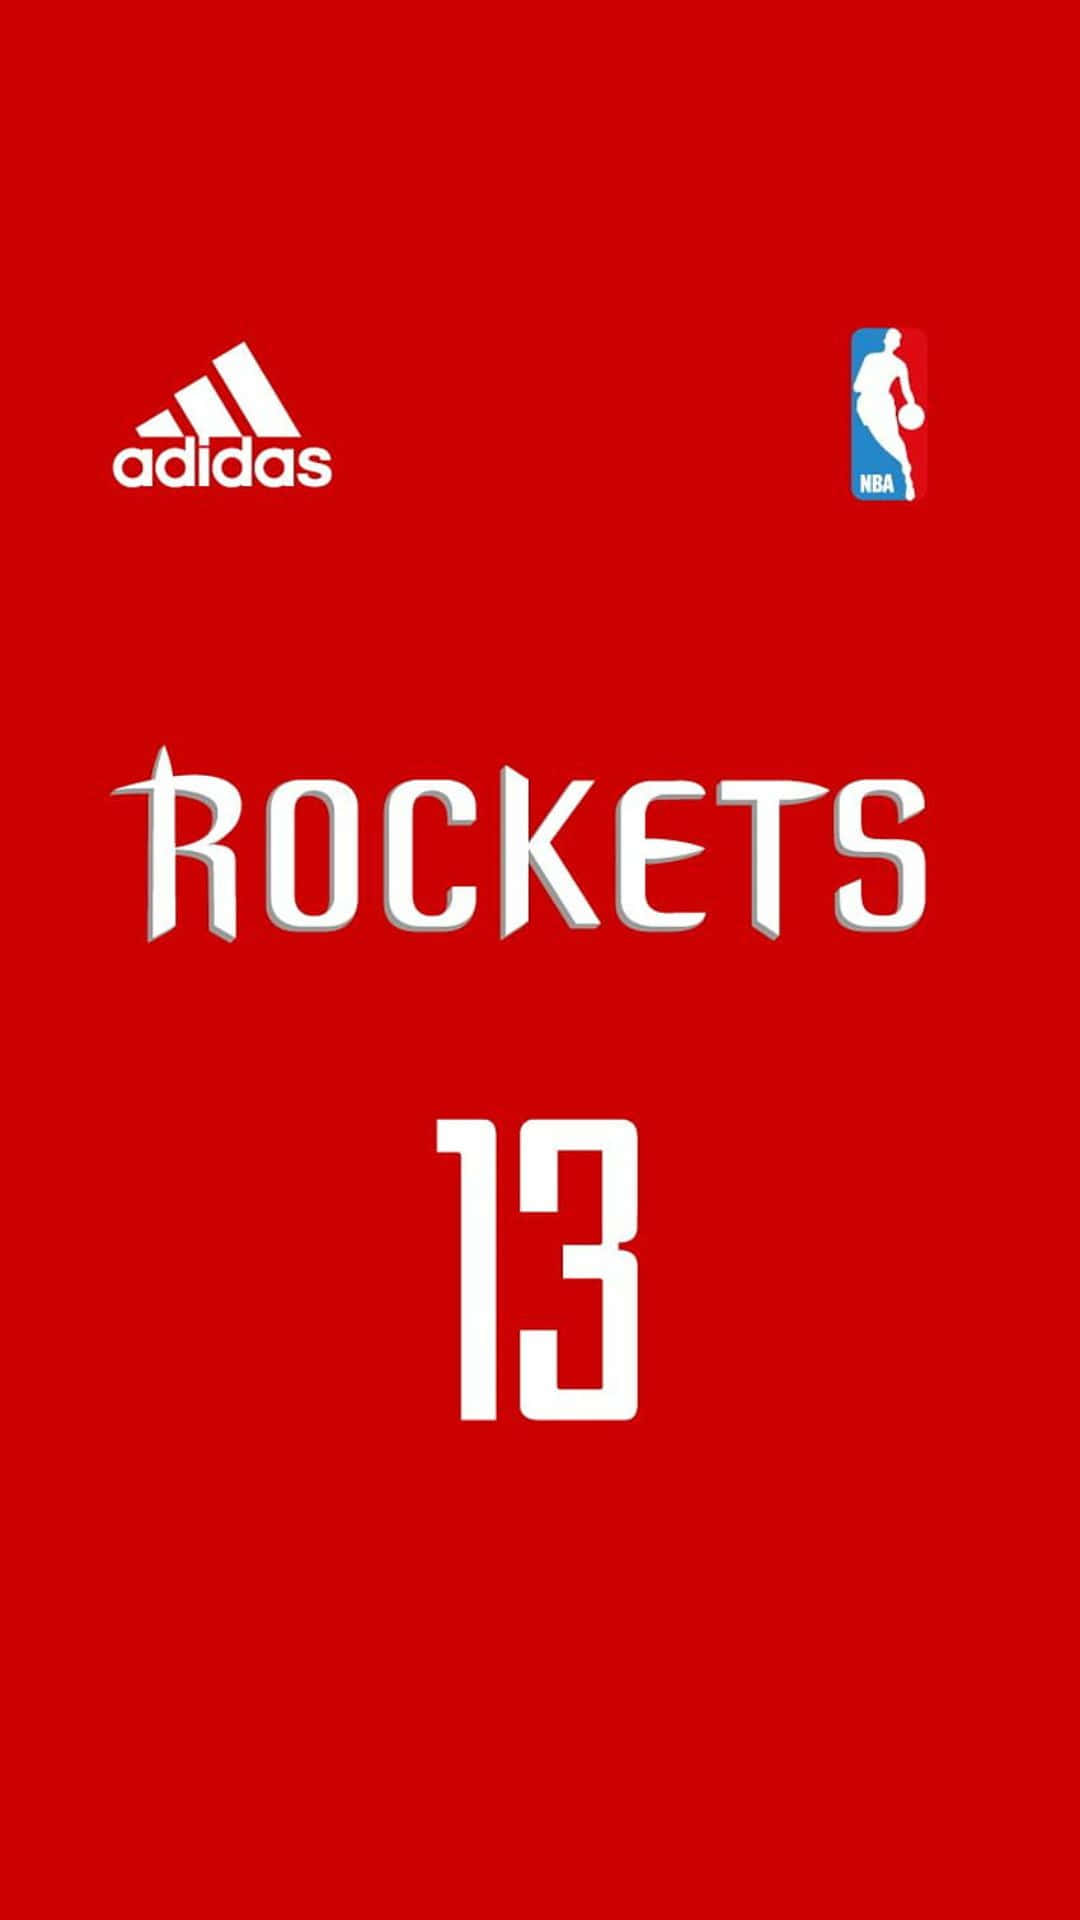 Adidas Rockets13 N B A Jersey Design Wallpaper